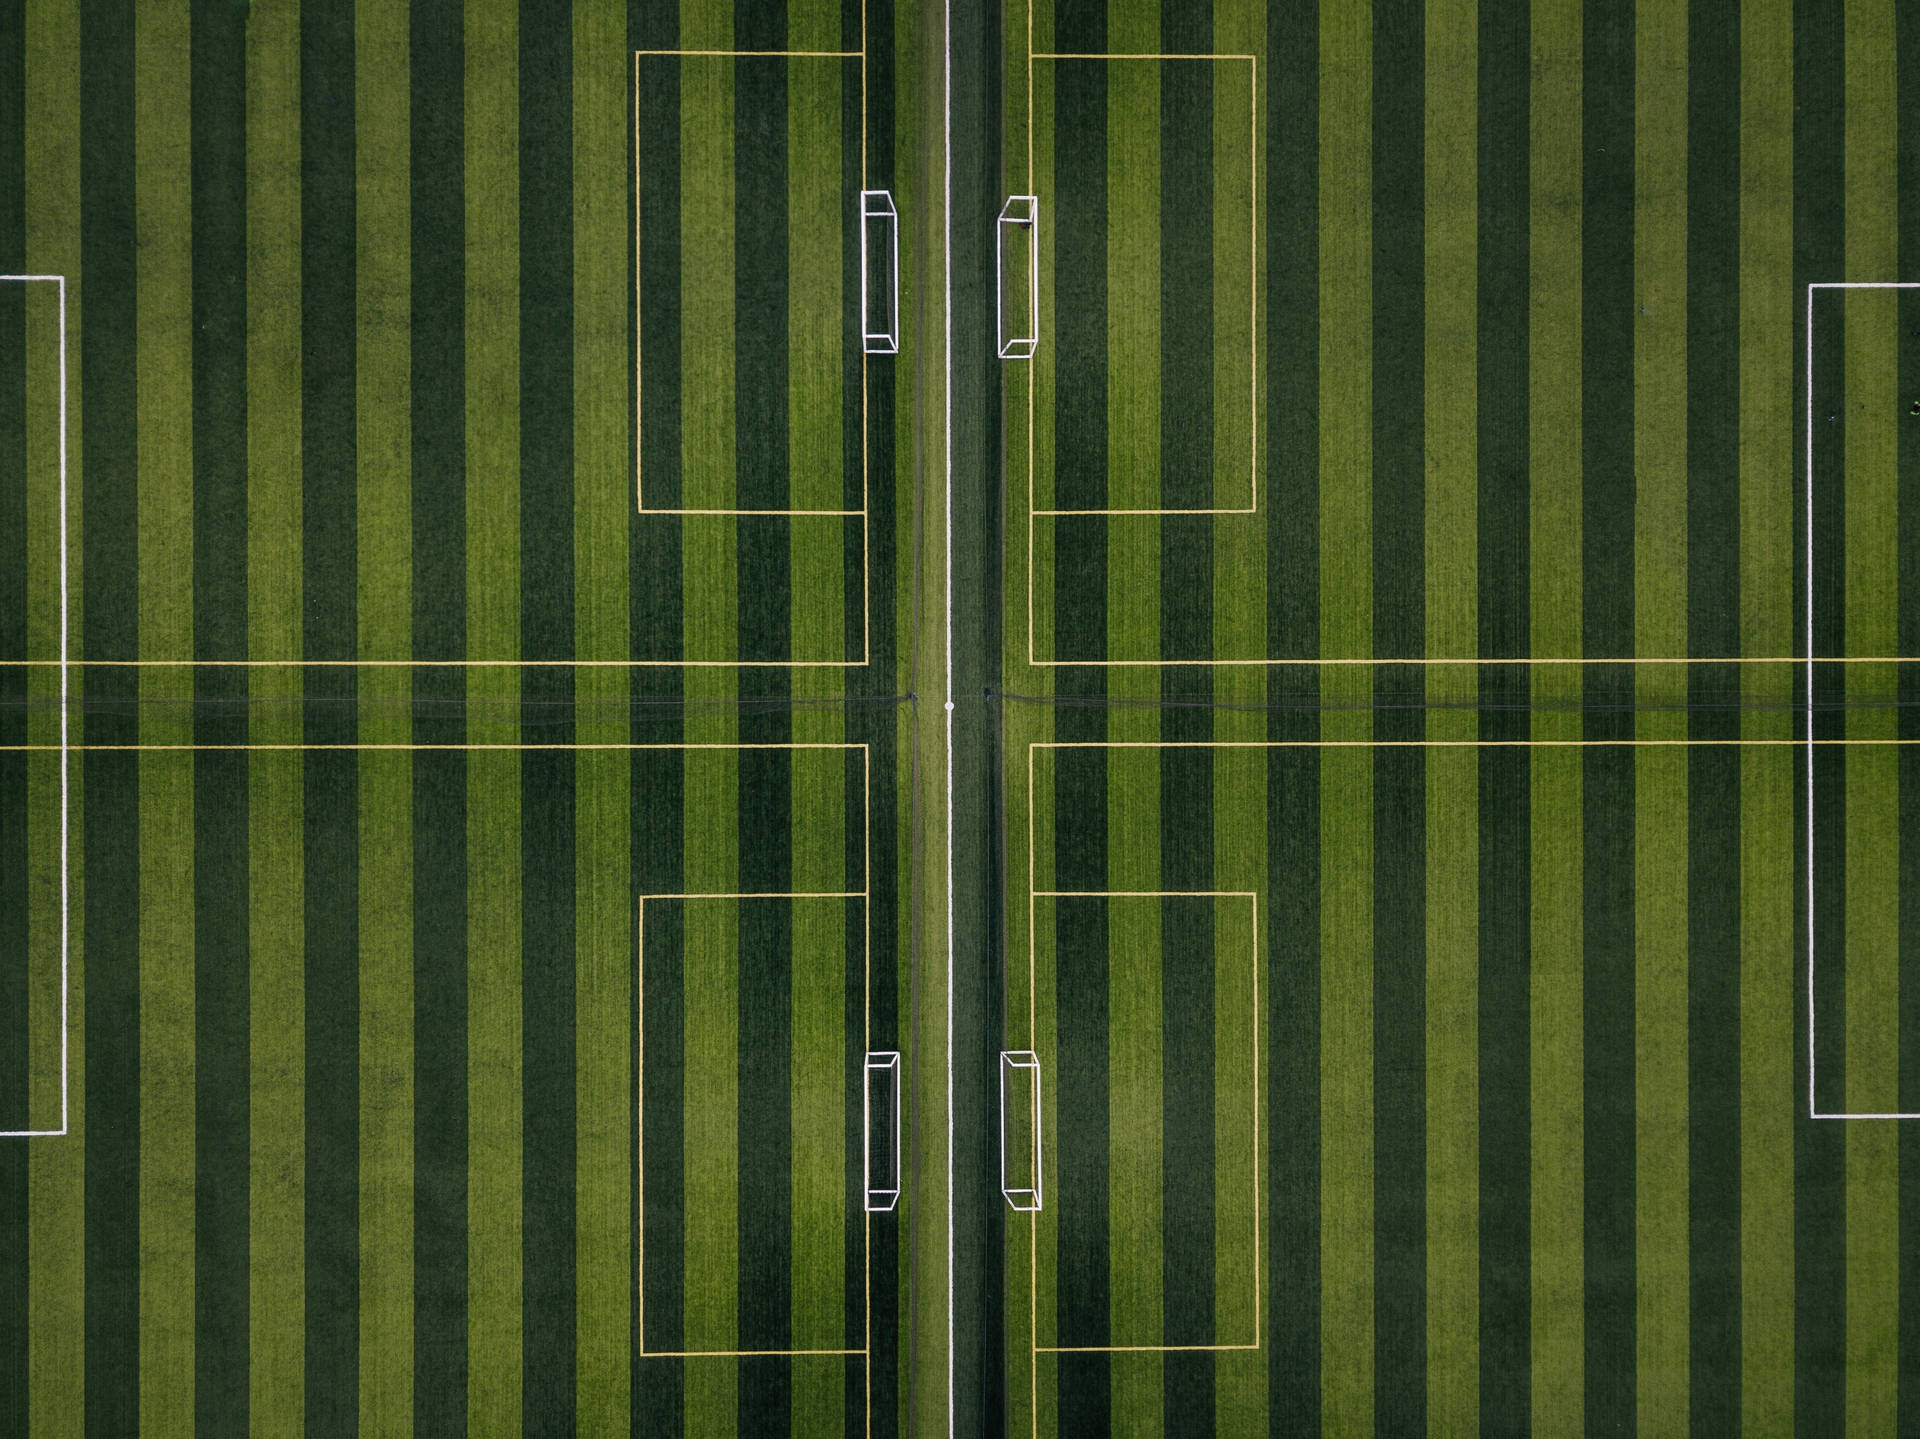 Striped Football Field